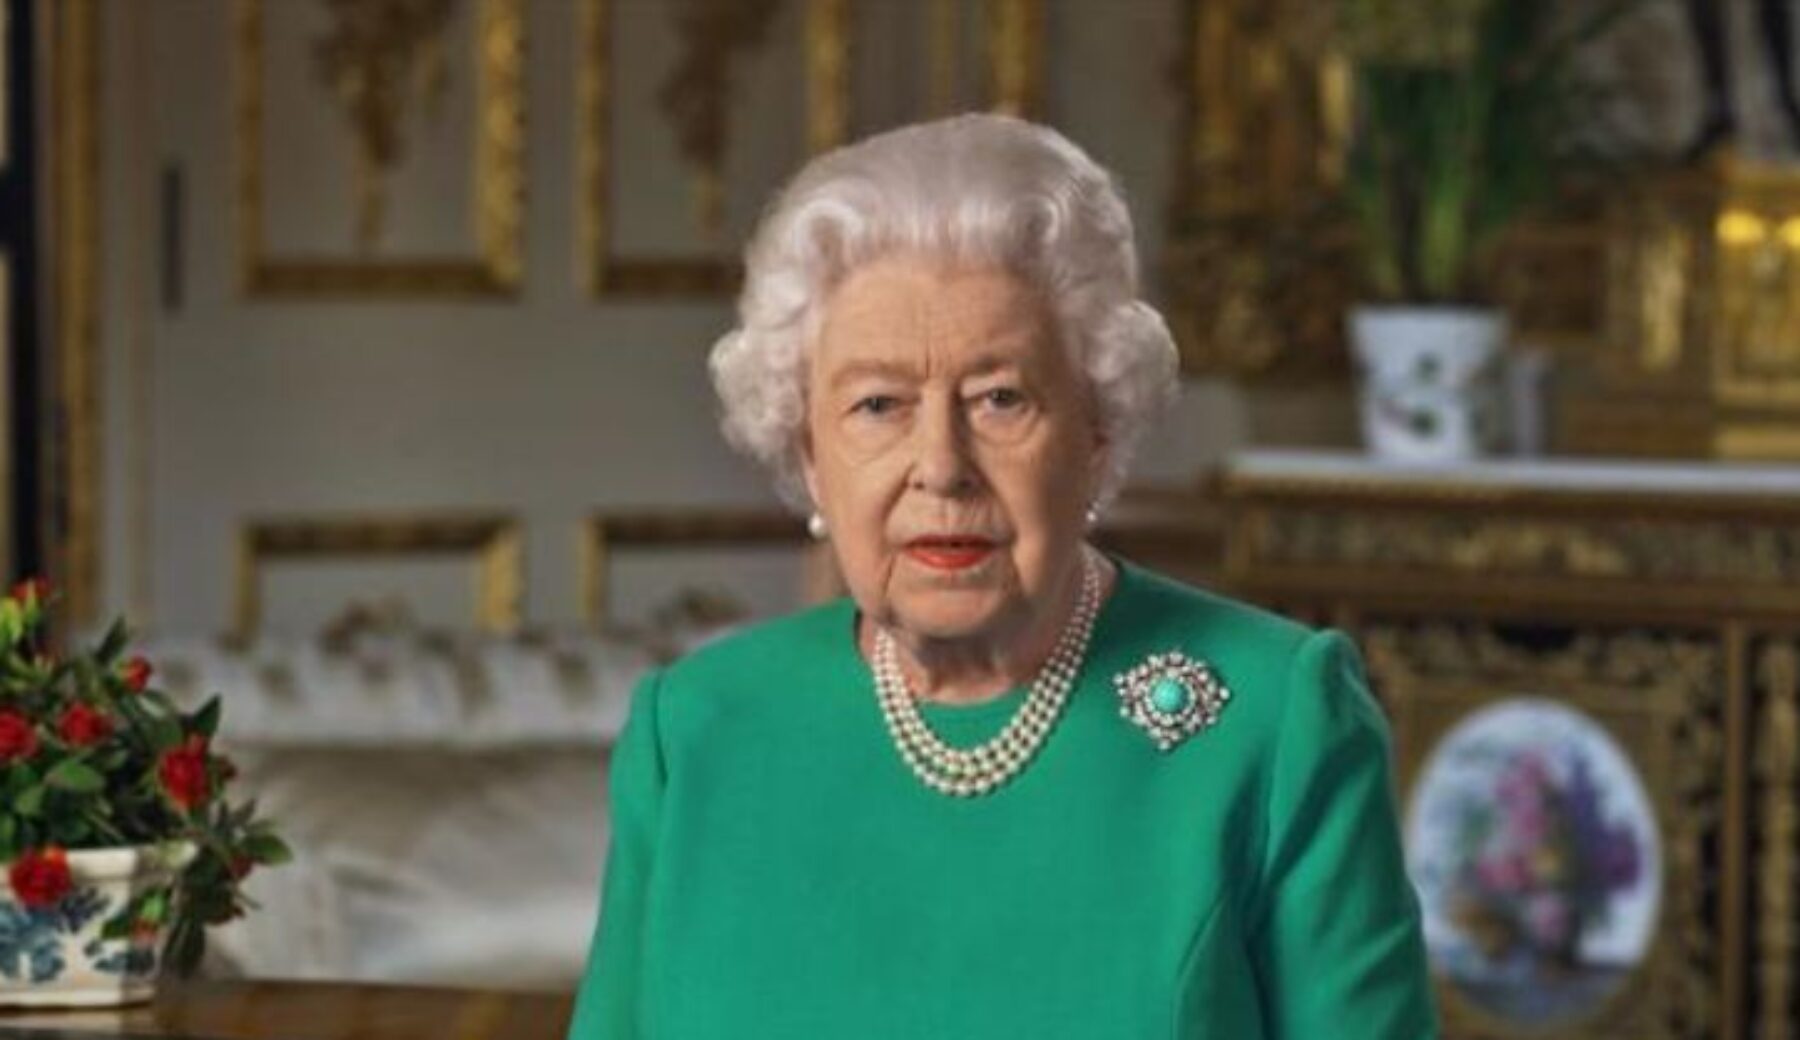 La Regina Elisabetta compie 94 anni, i festeggiamenti virtuali a causa del Coronavirus